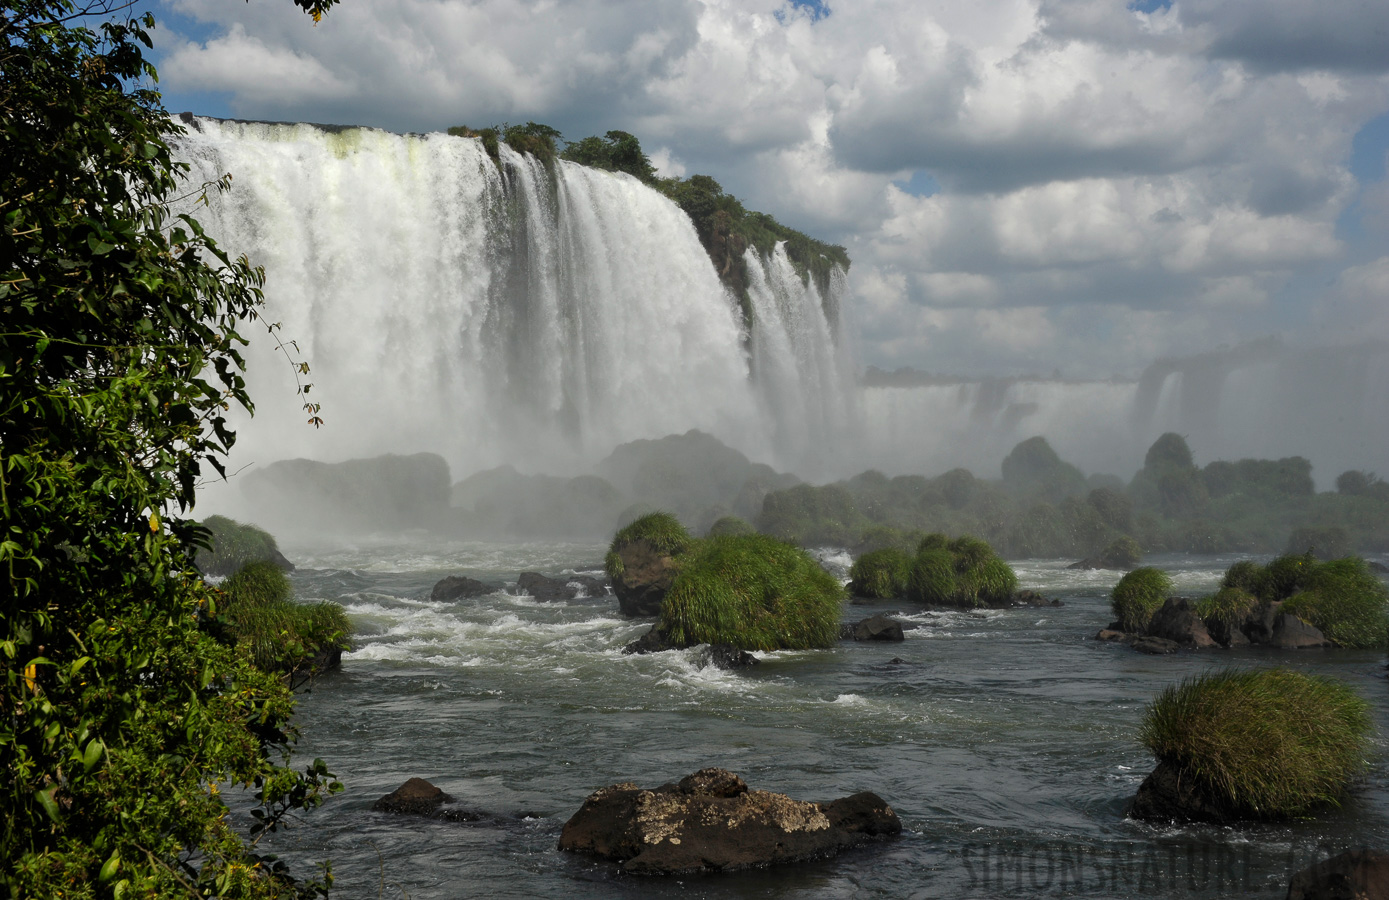 Cataratas del Iguazu [52 mm, 1/500 sec at f / 16, ISO 400]